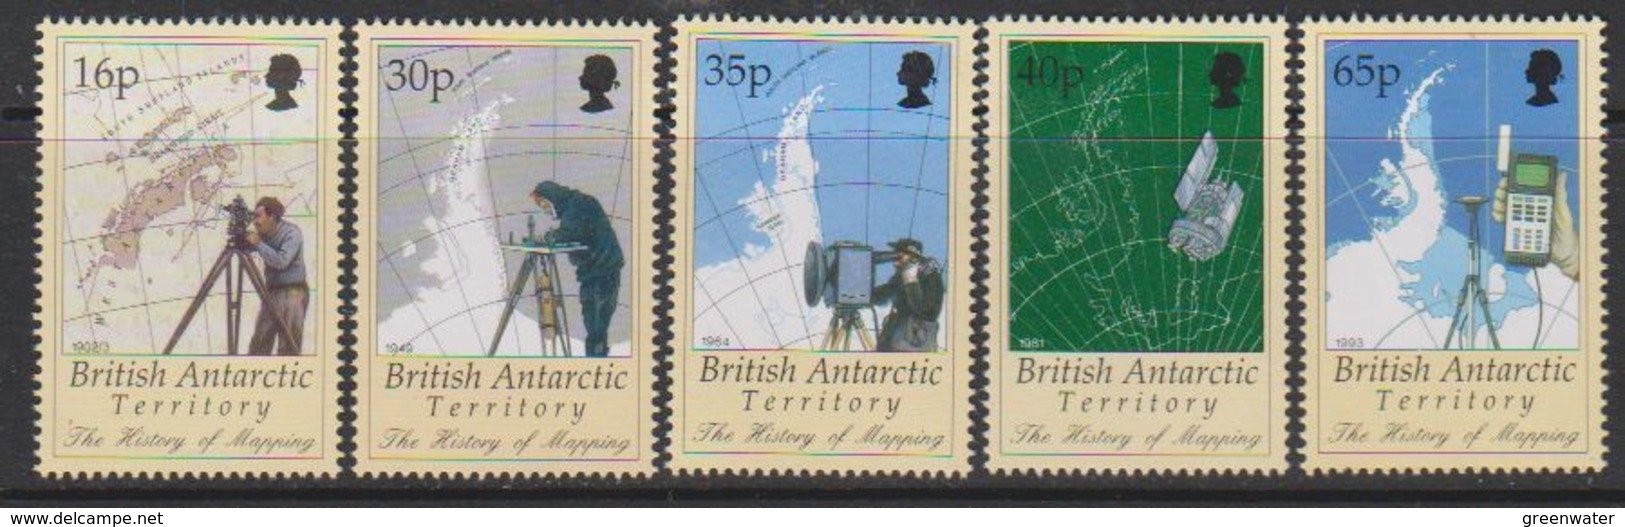 British Antarctic Territory (BAT) 1998 History Of Mapping 5v ** Mnh (59510) - Ongebruikt